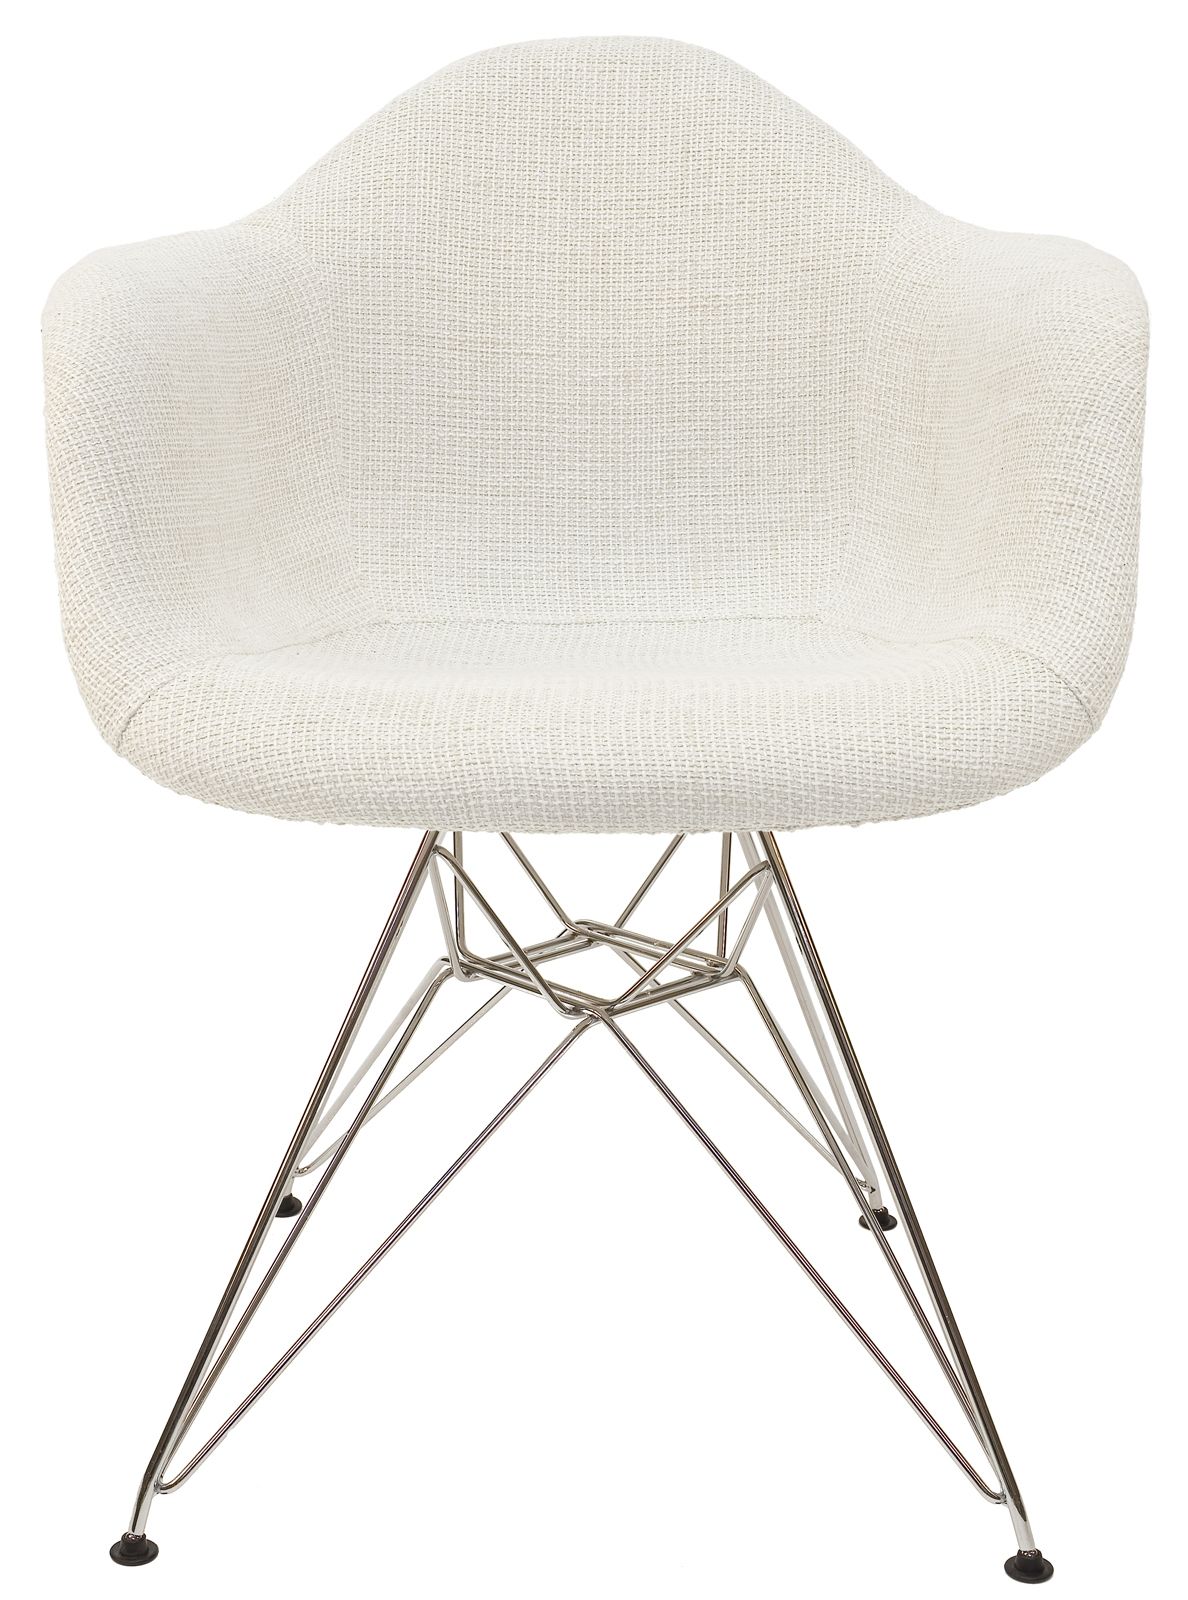 Replica Eames DAR Eiffel Chair | Textured Ivory & Chrome